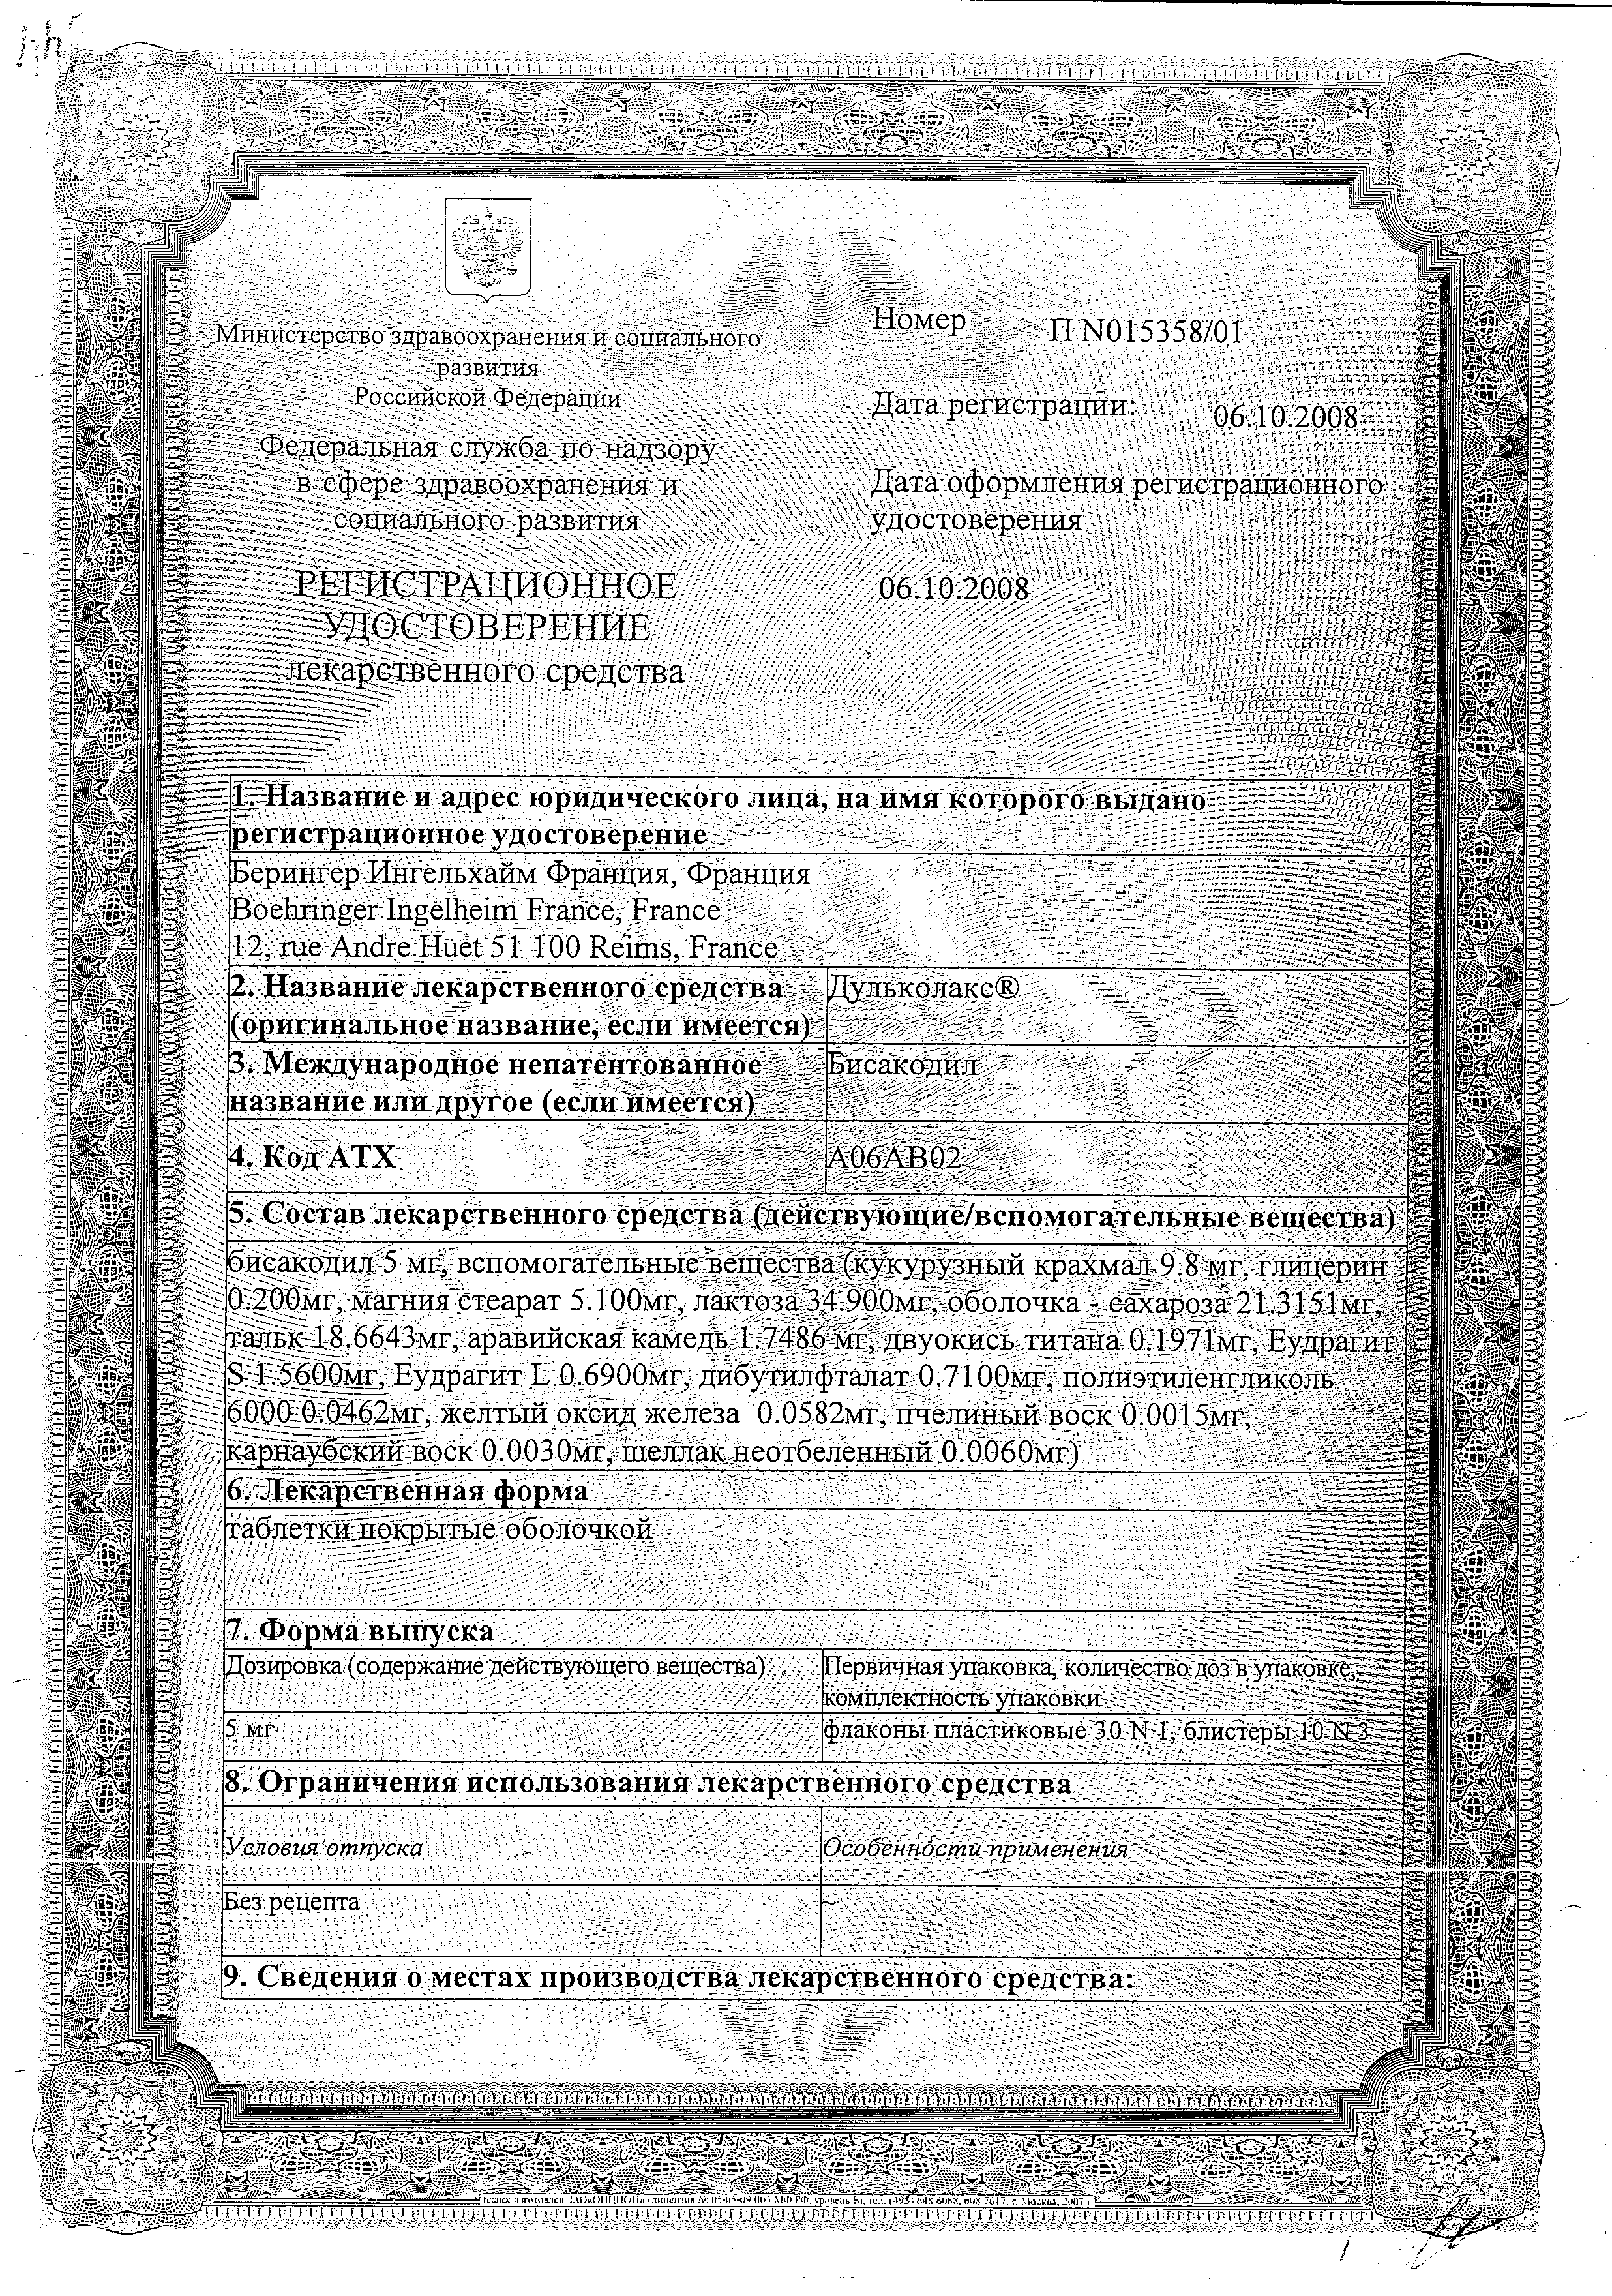 Дульколакс сертификат